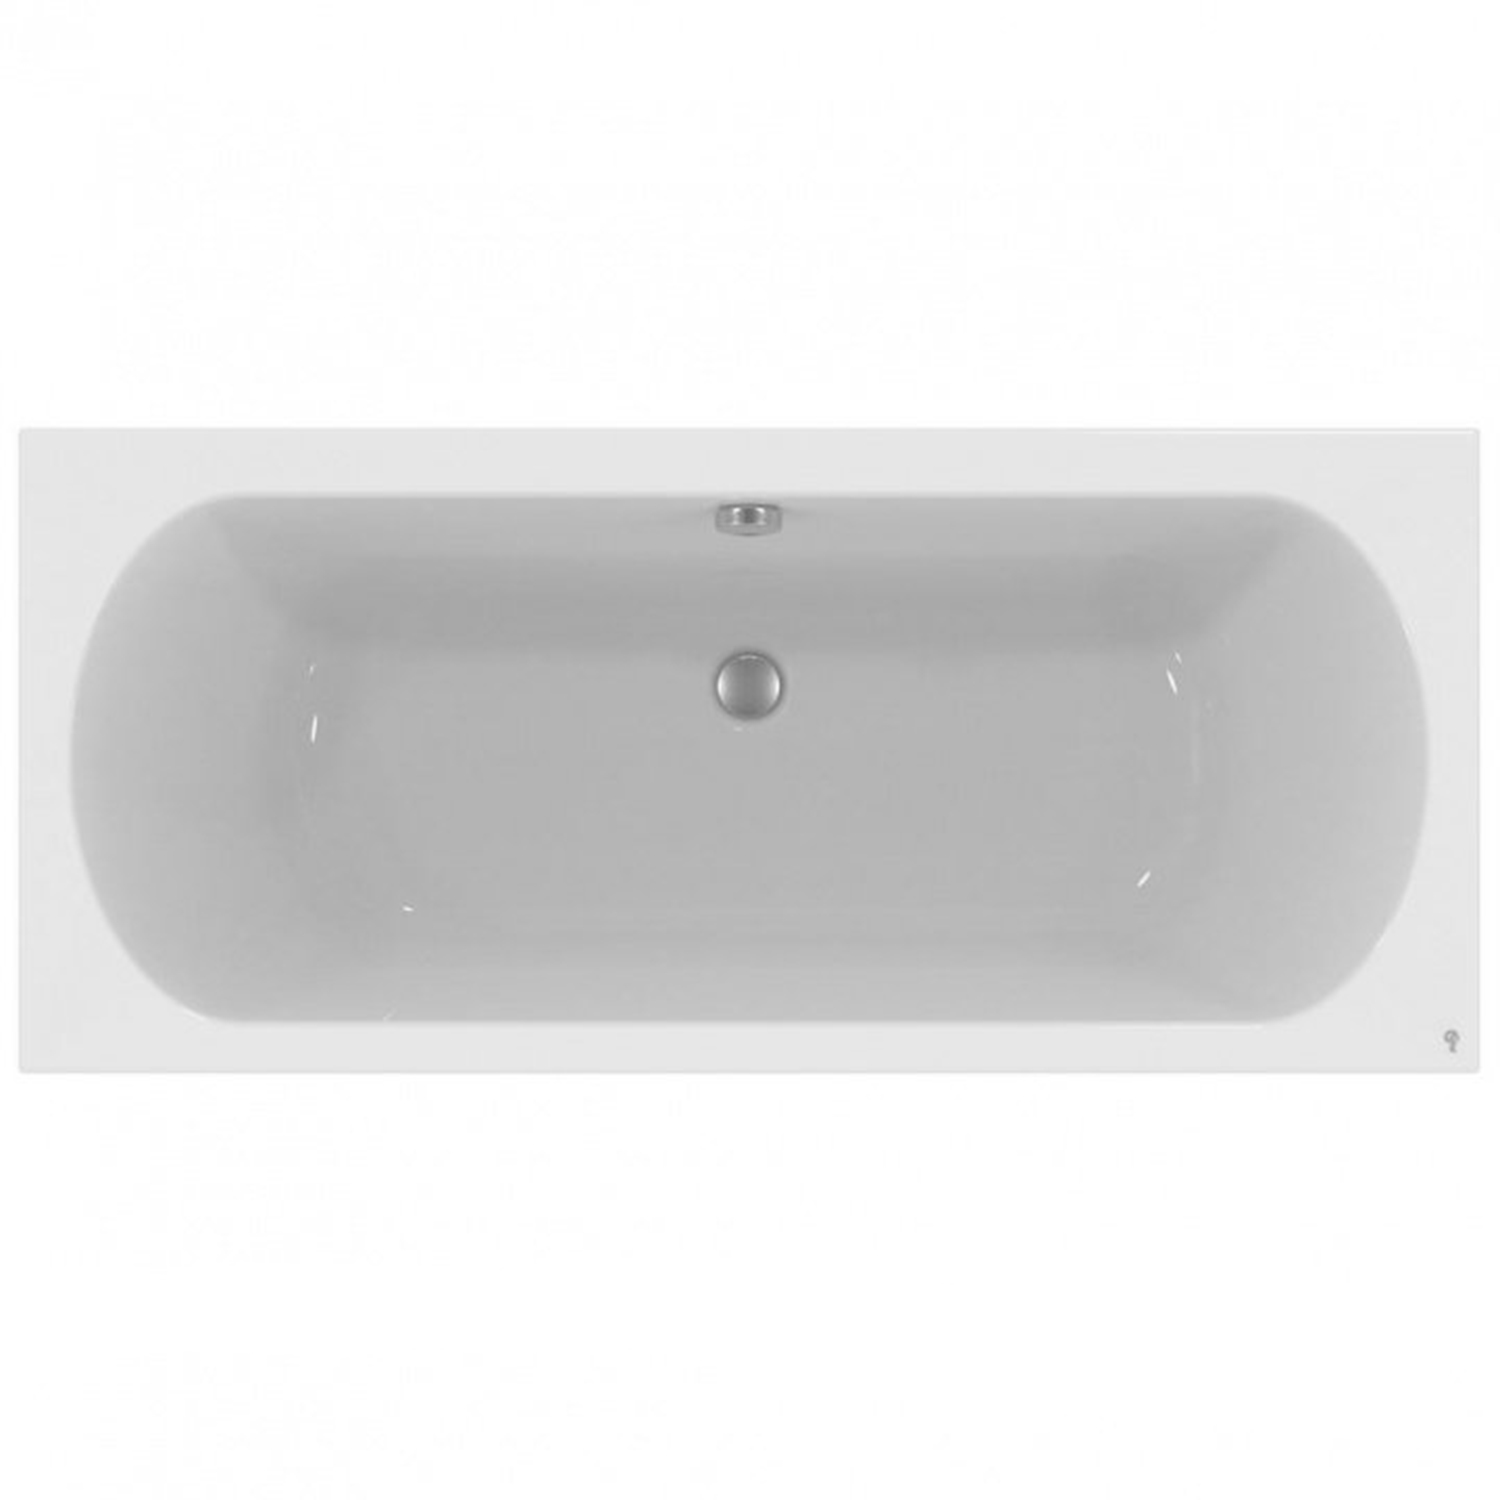 Акриловая ванна Ideal Standard Hotline 180х80 акриловая ванна ideal standard connect air 170х75 e106401 на ножках